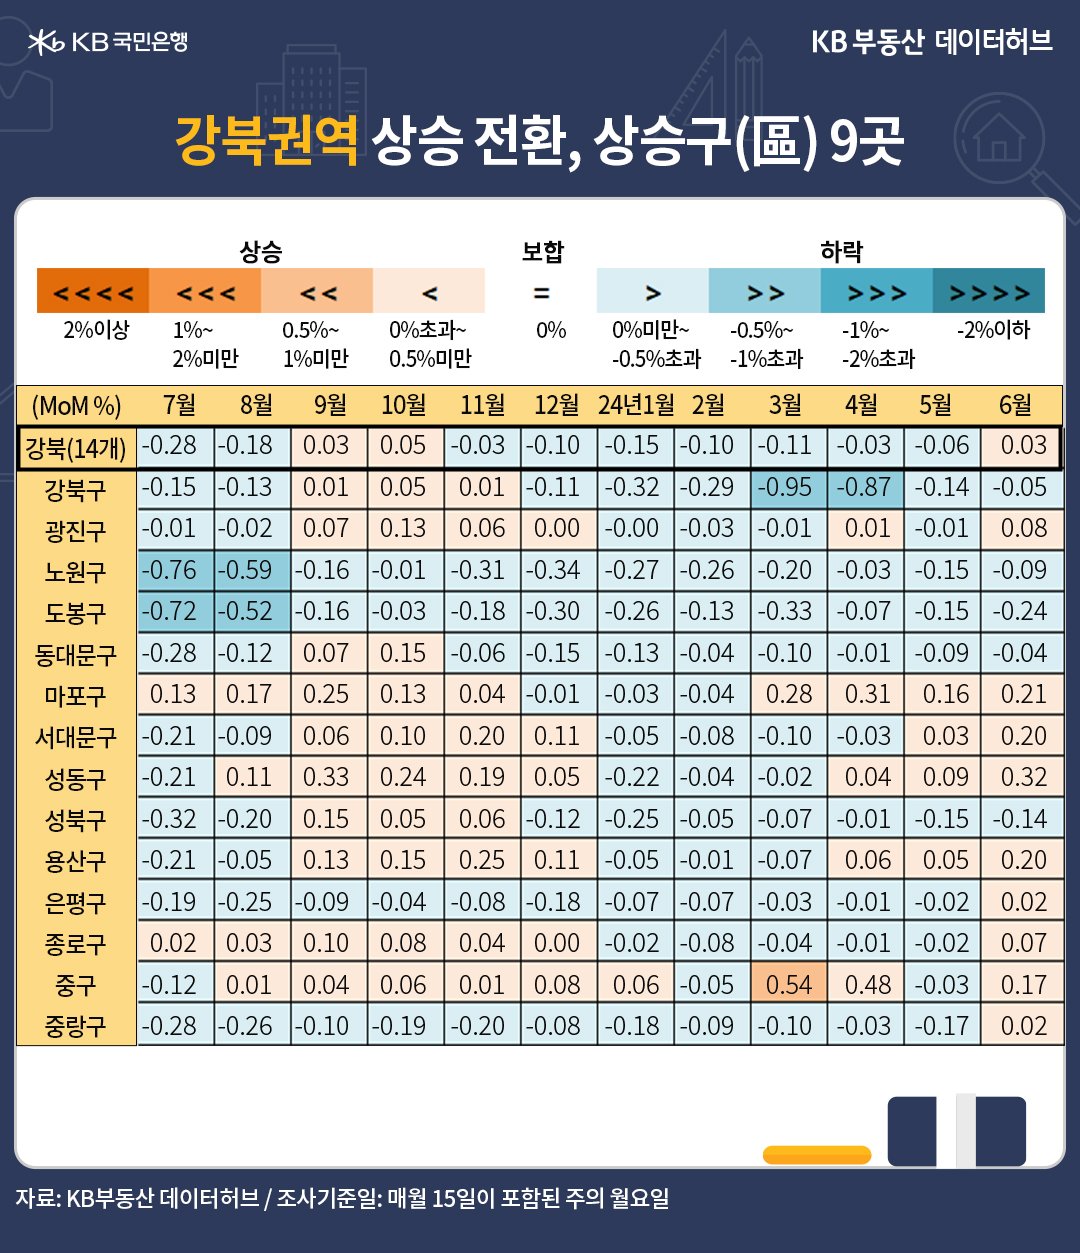 6월 '서울' '매매가격' 전월 대비 증감률은 3개월째 회복세인 내용 등이 포함된 표이다.